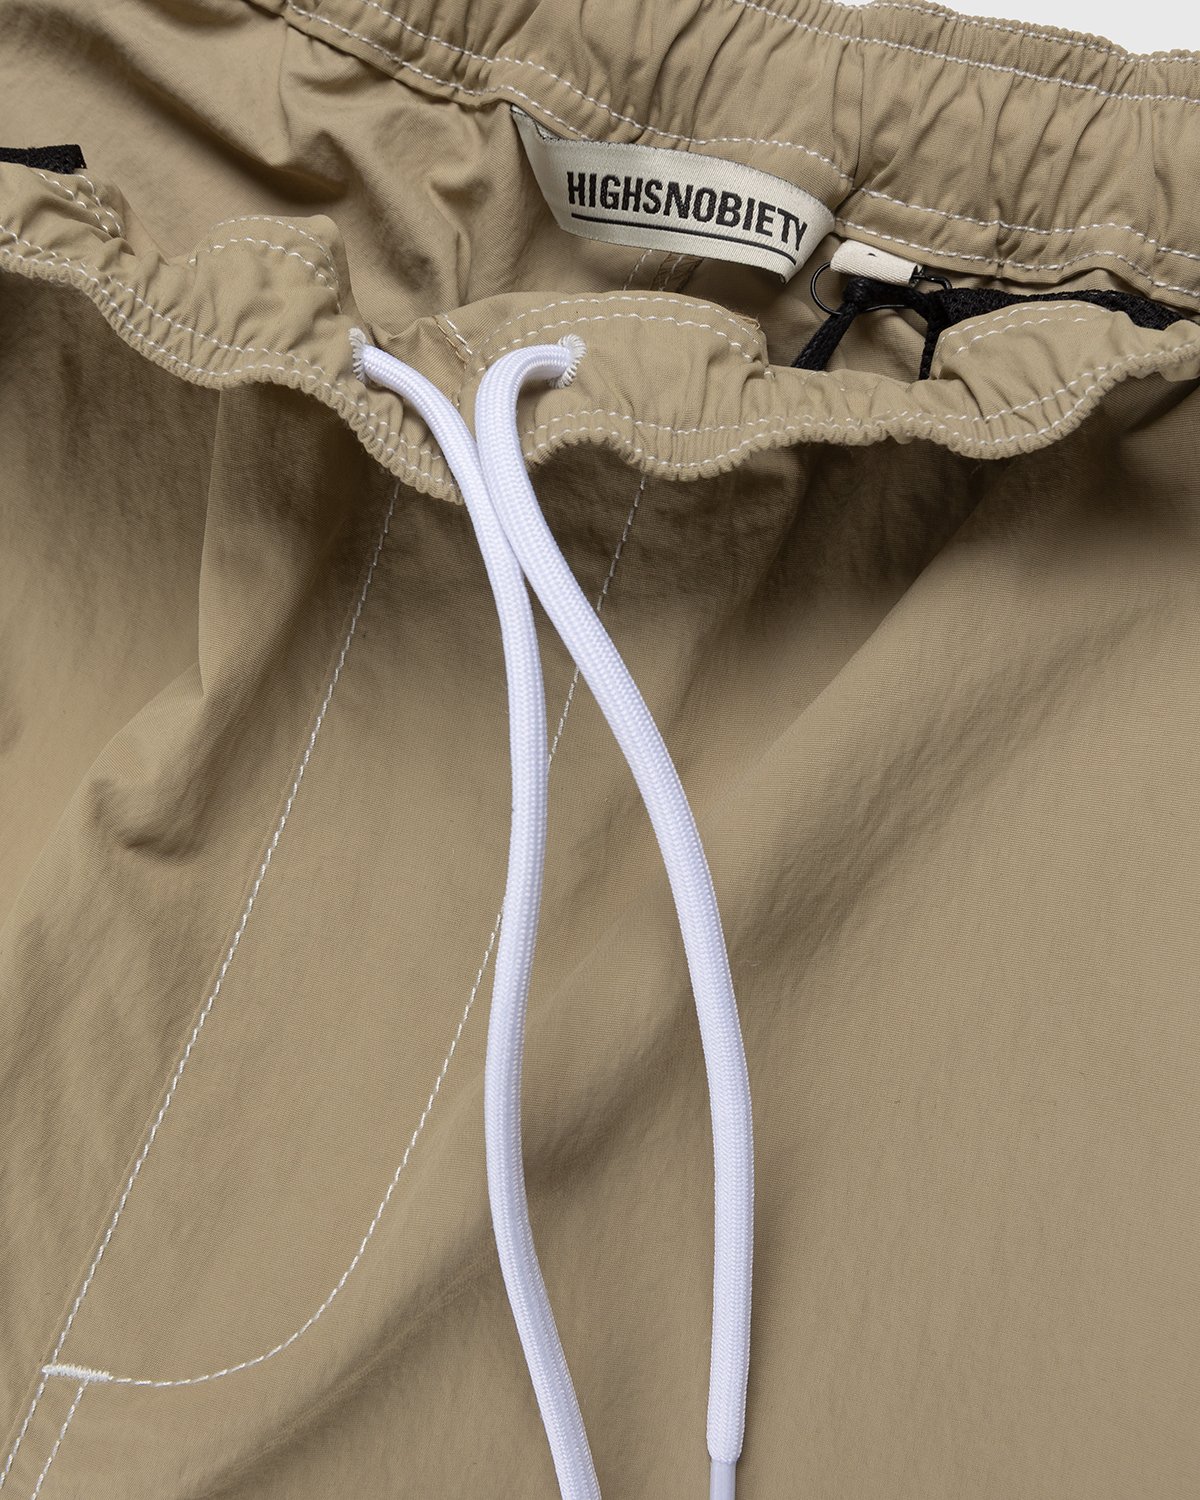 Highsnobiety - Contrast Brushed Nylon Elastic Pants Beige - Clothing - Beige - Image 5